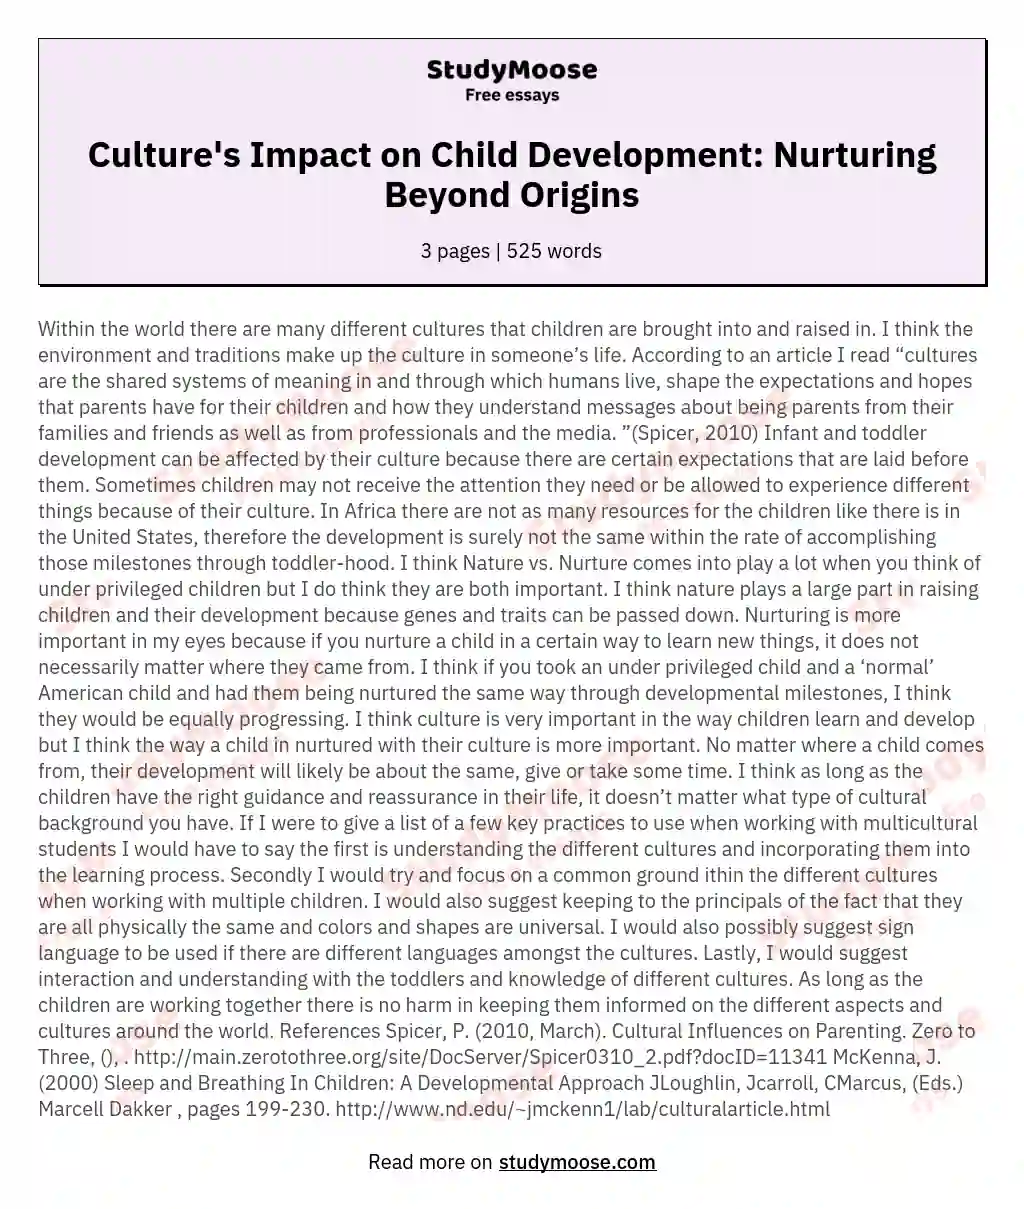 Culture's Impact on Child Development: Nurturing Beyond Origins essay